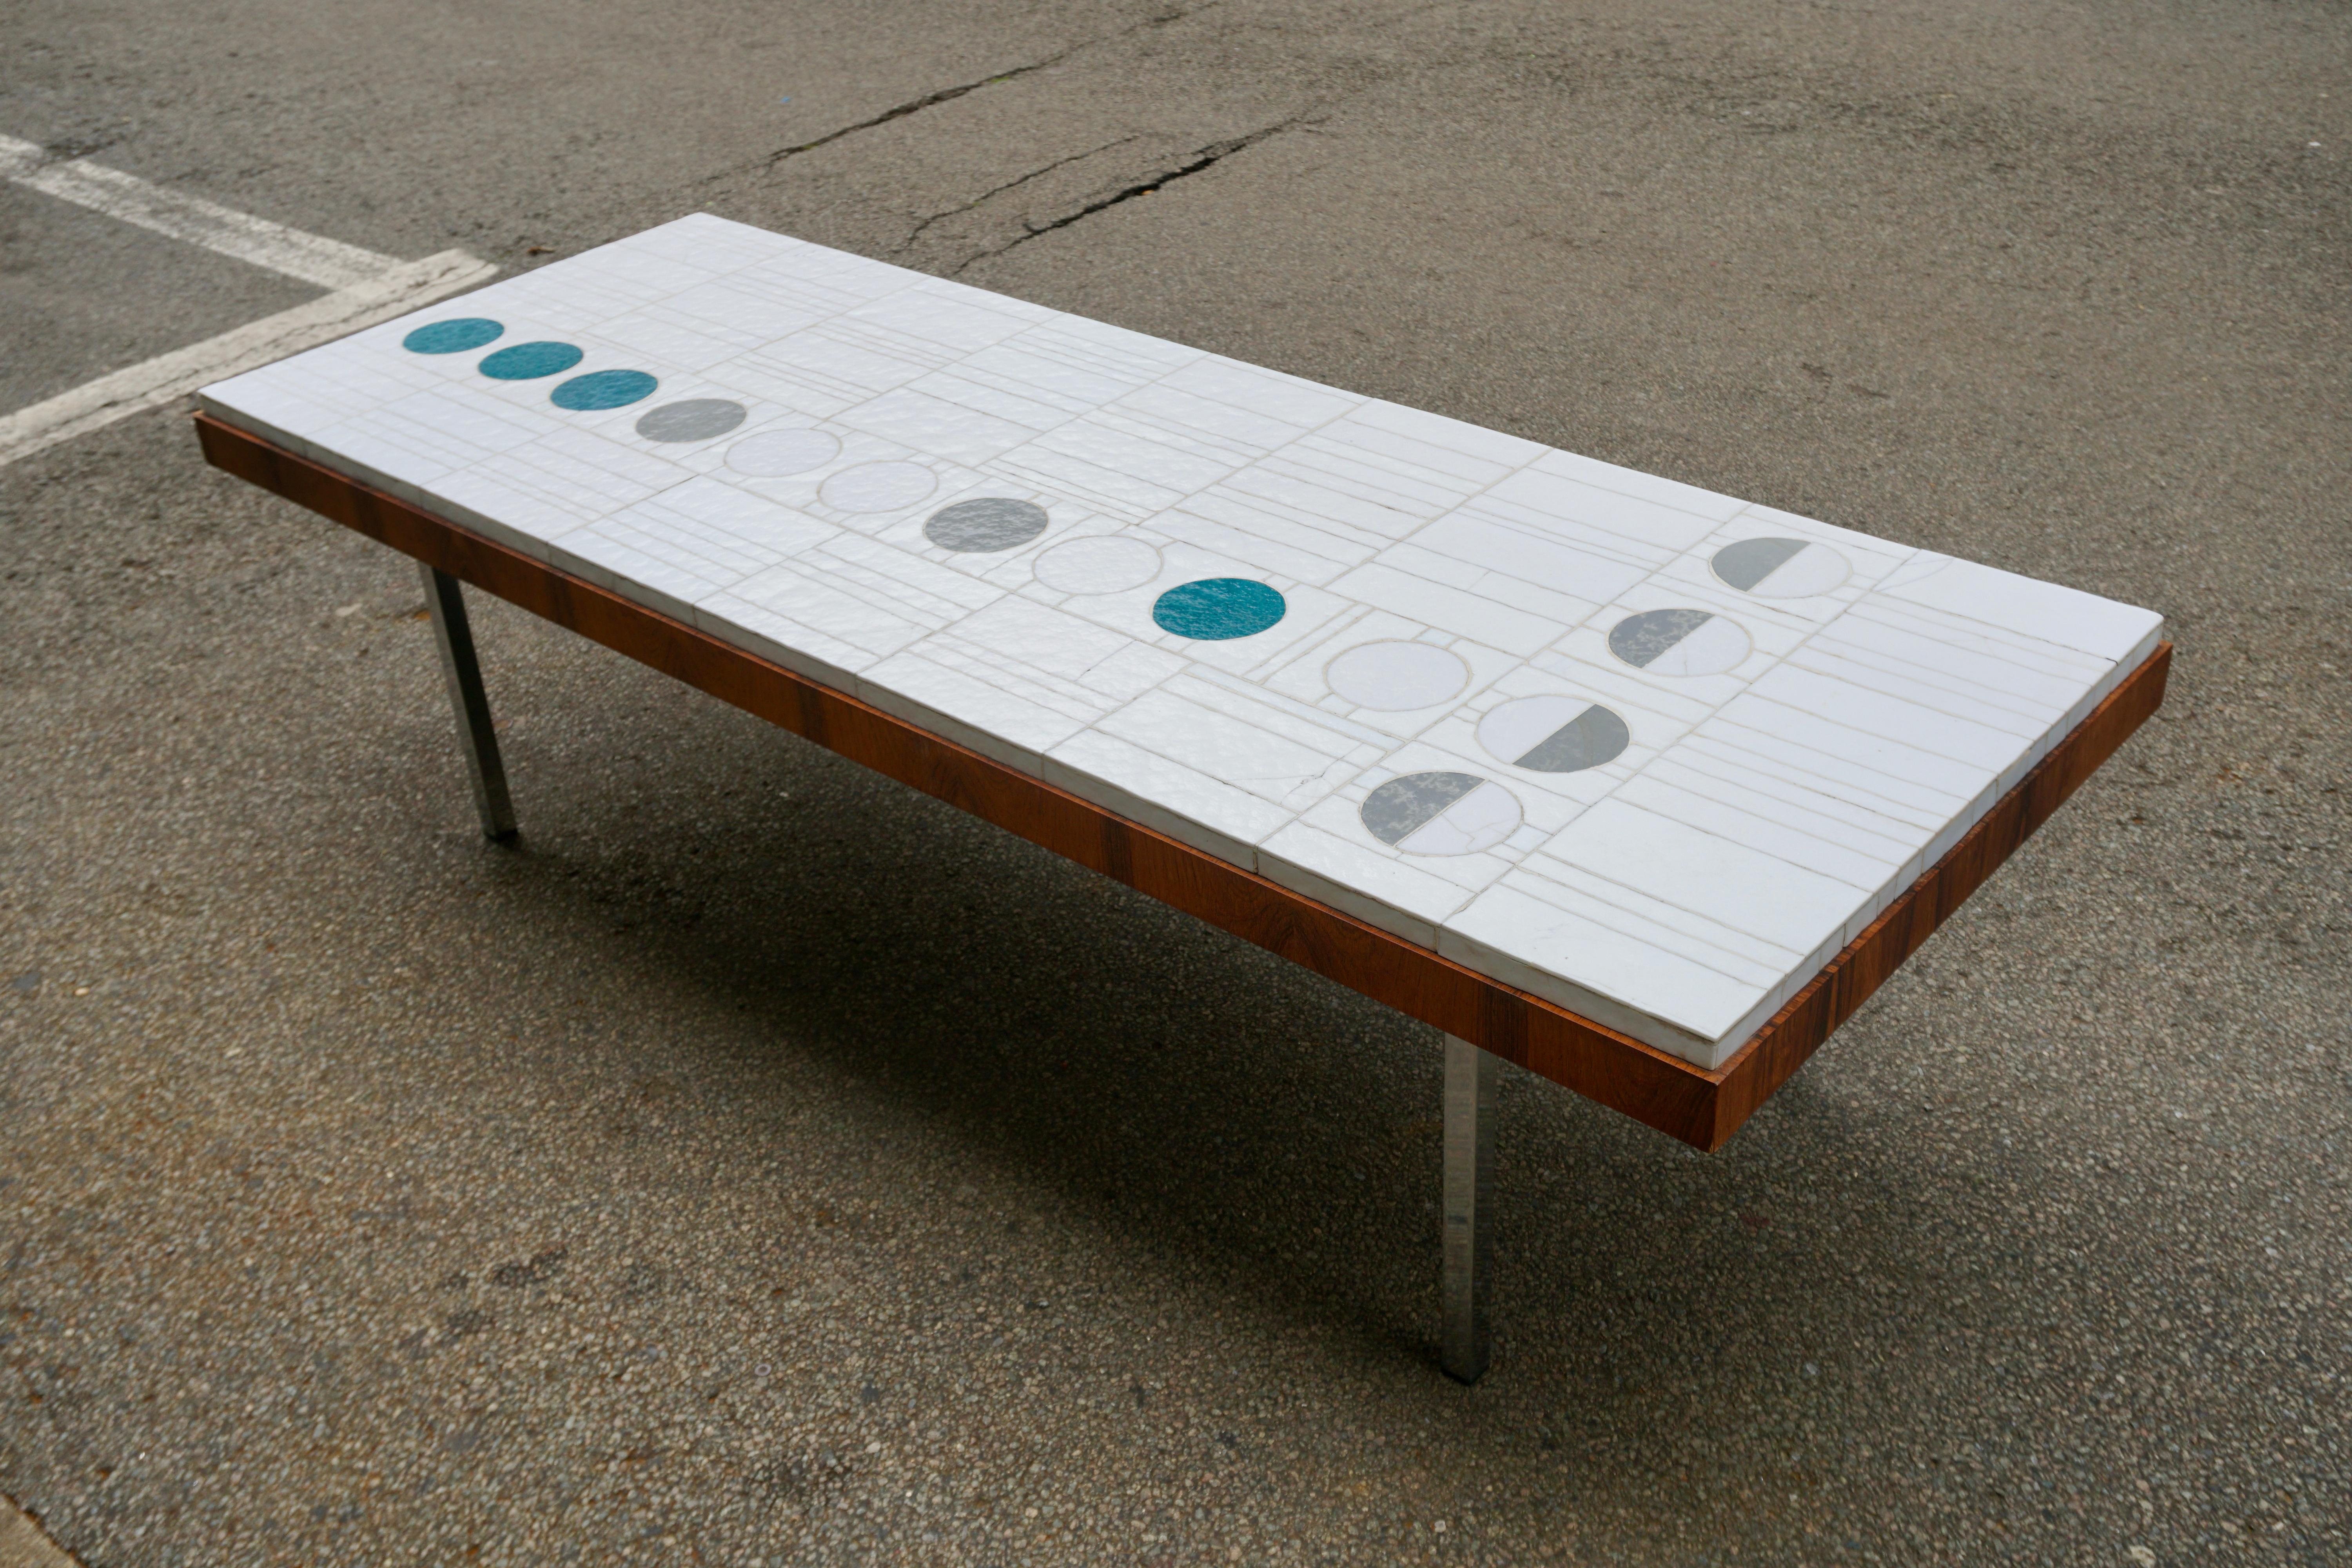 Table basse rectangulaire en céramique abstraite blanche sur quatre pieds chromés.
Cette table n'est pas signée mais réalisée dans le style de Pia Manu.

Dimensions ;
Largeur 161 cm.
profondeur 61 cm.
Hauteur 45 cm.
Épaisseur du plateau de table 7